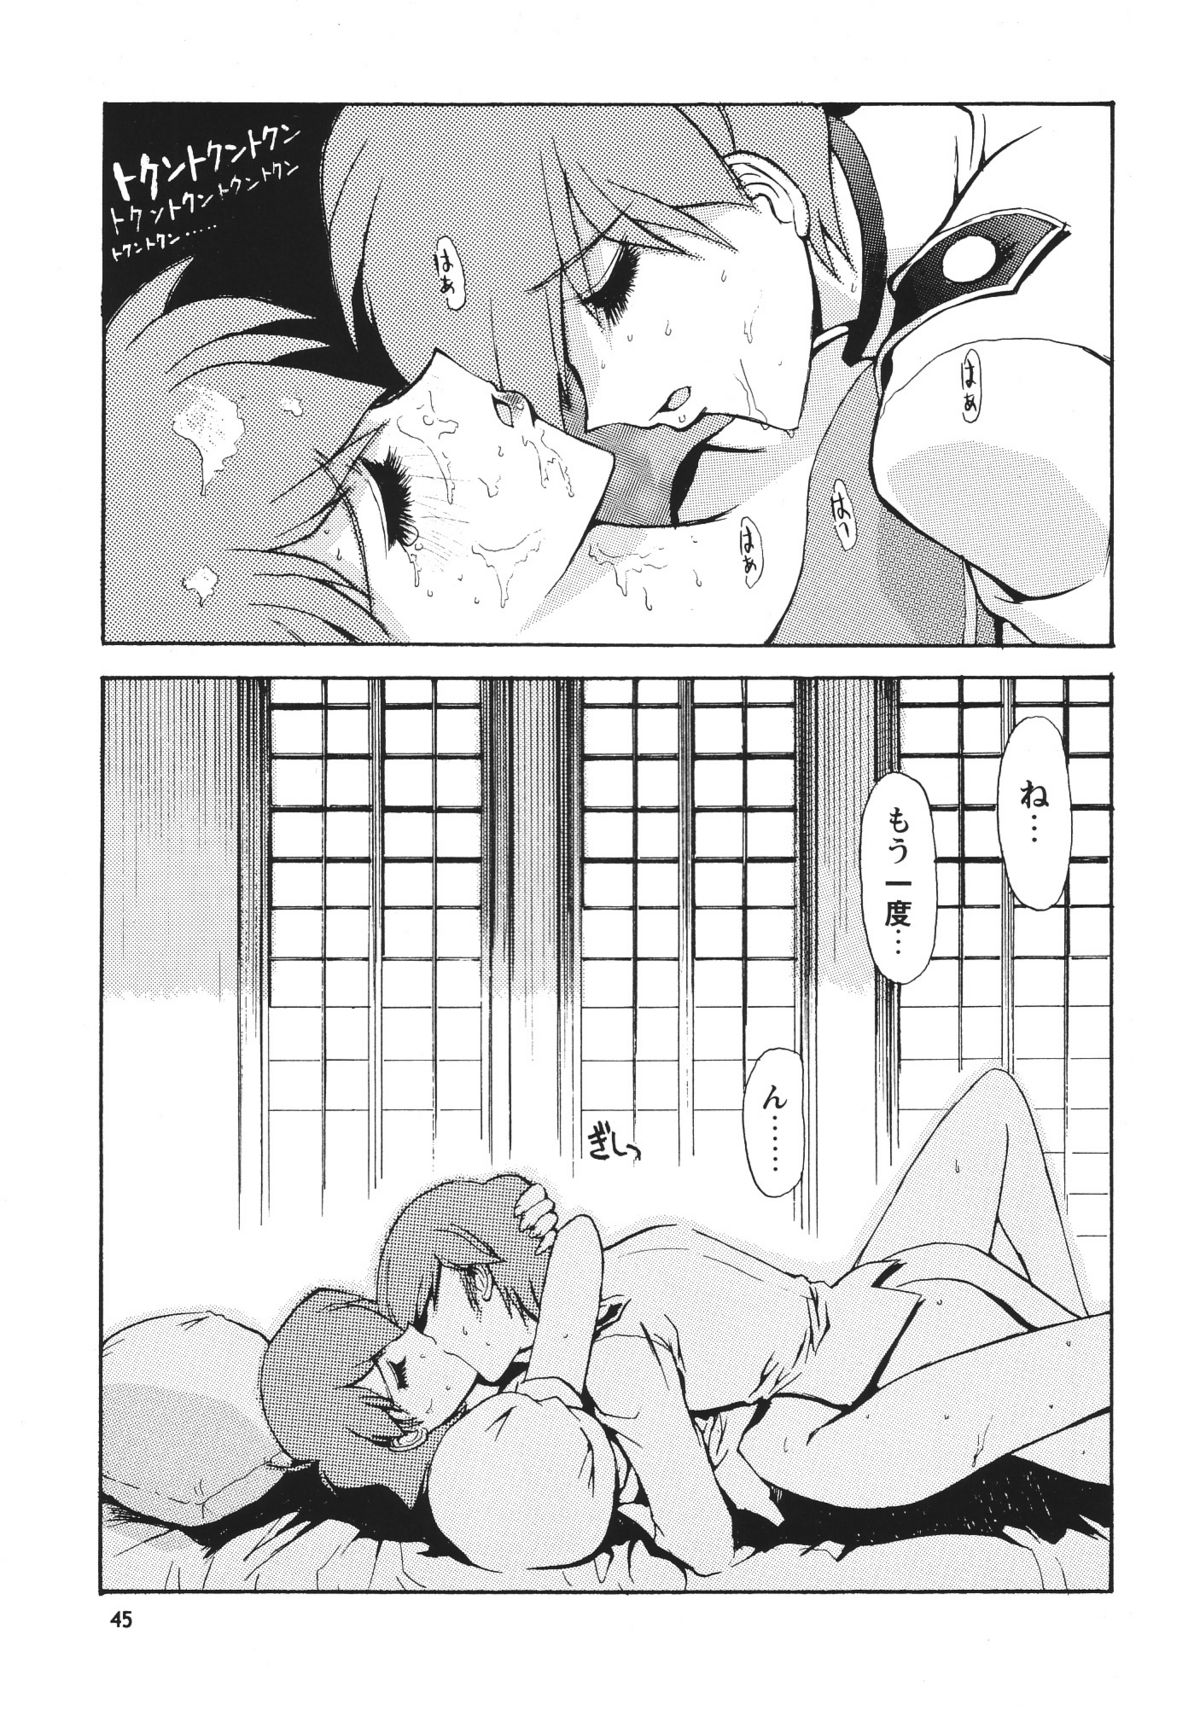 [Seishun No Nigirikobushi!] Favorite Visions 2 (Sailor Moon, AIKa) page 47 full